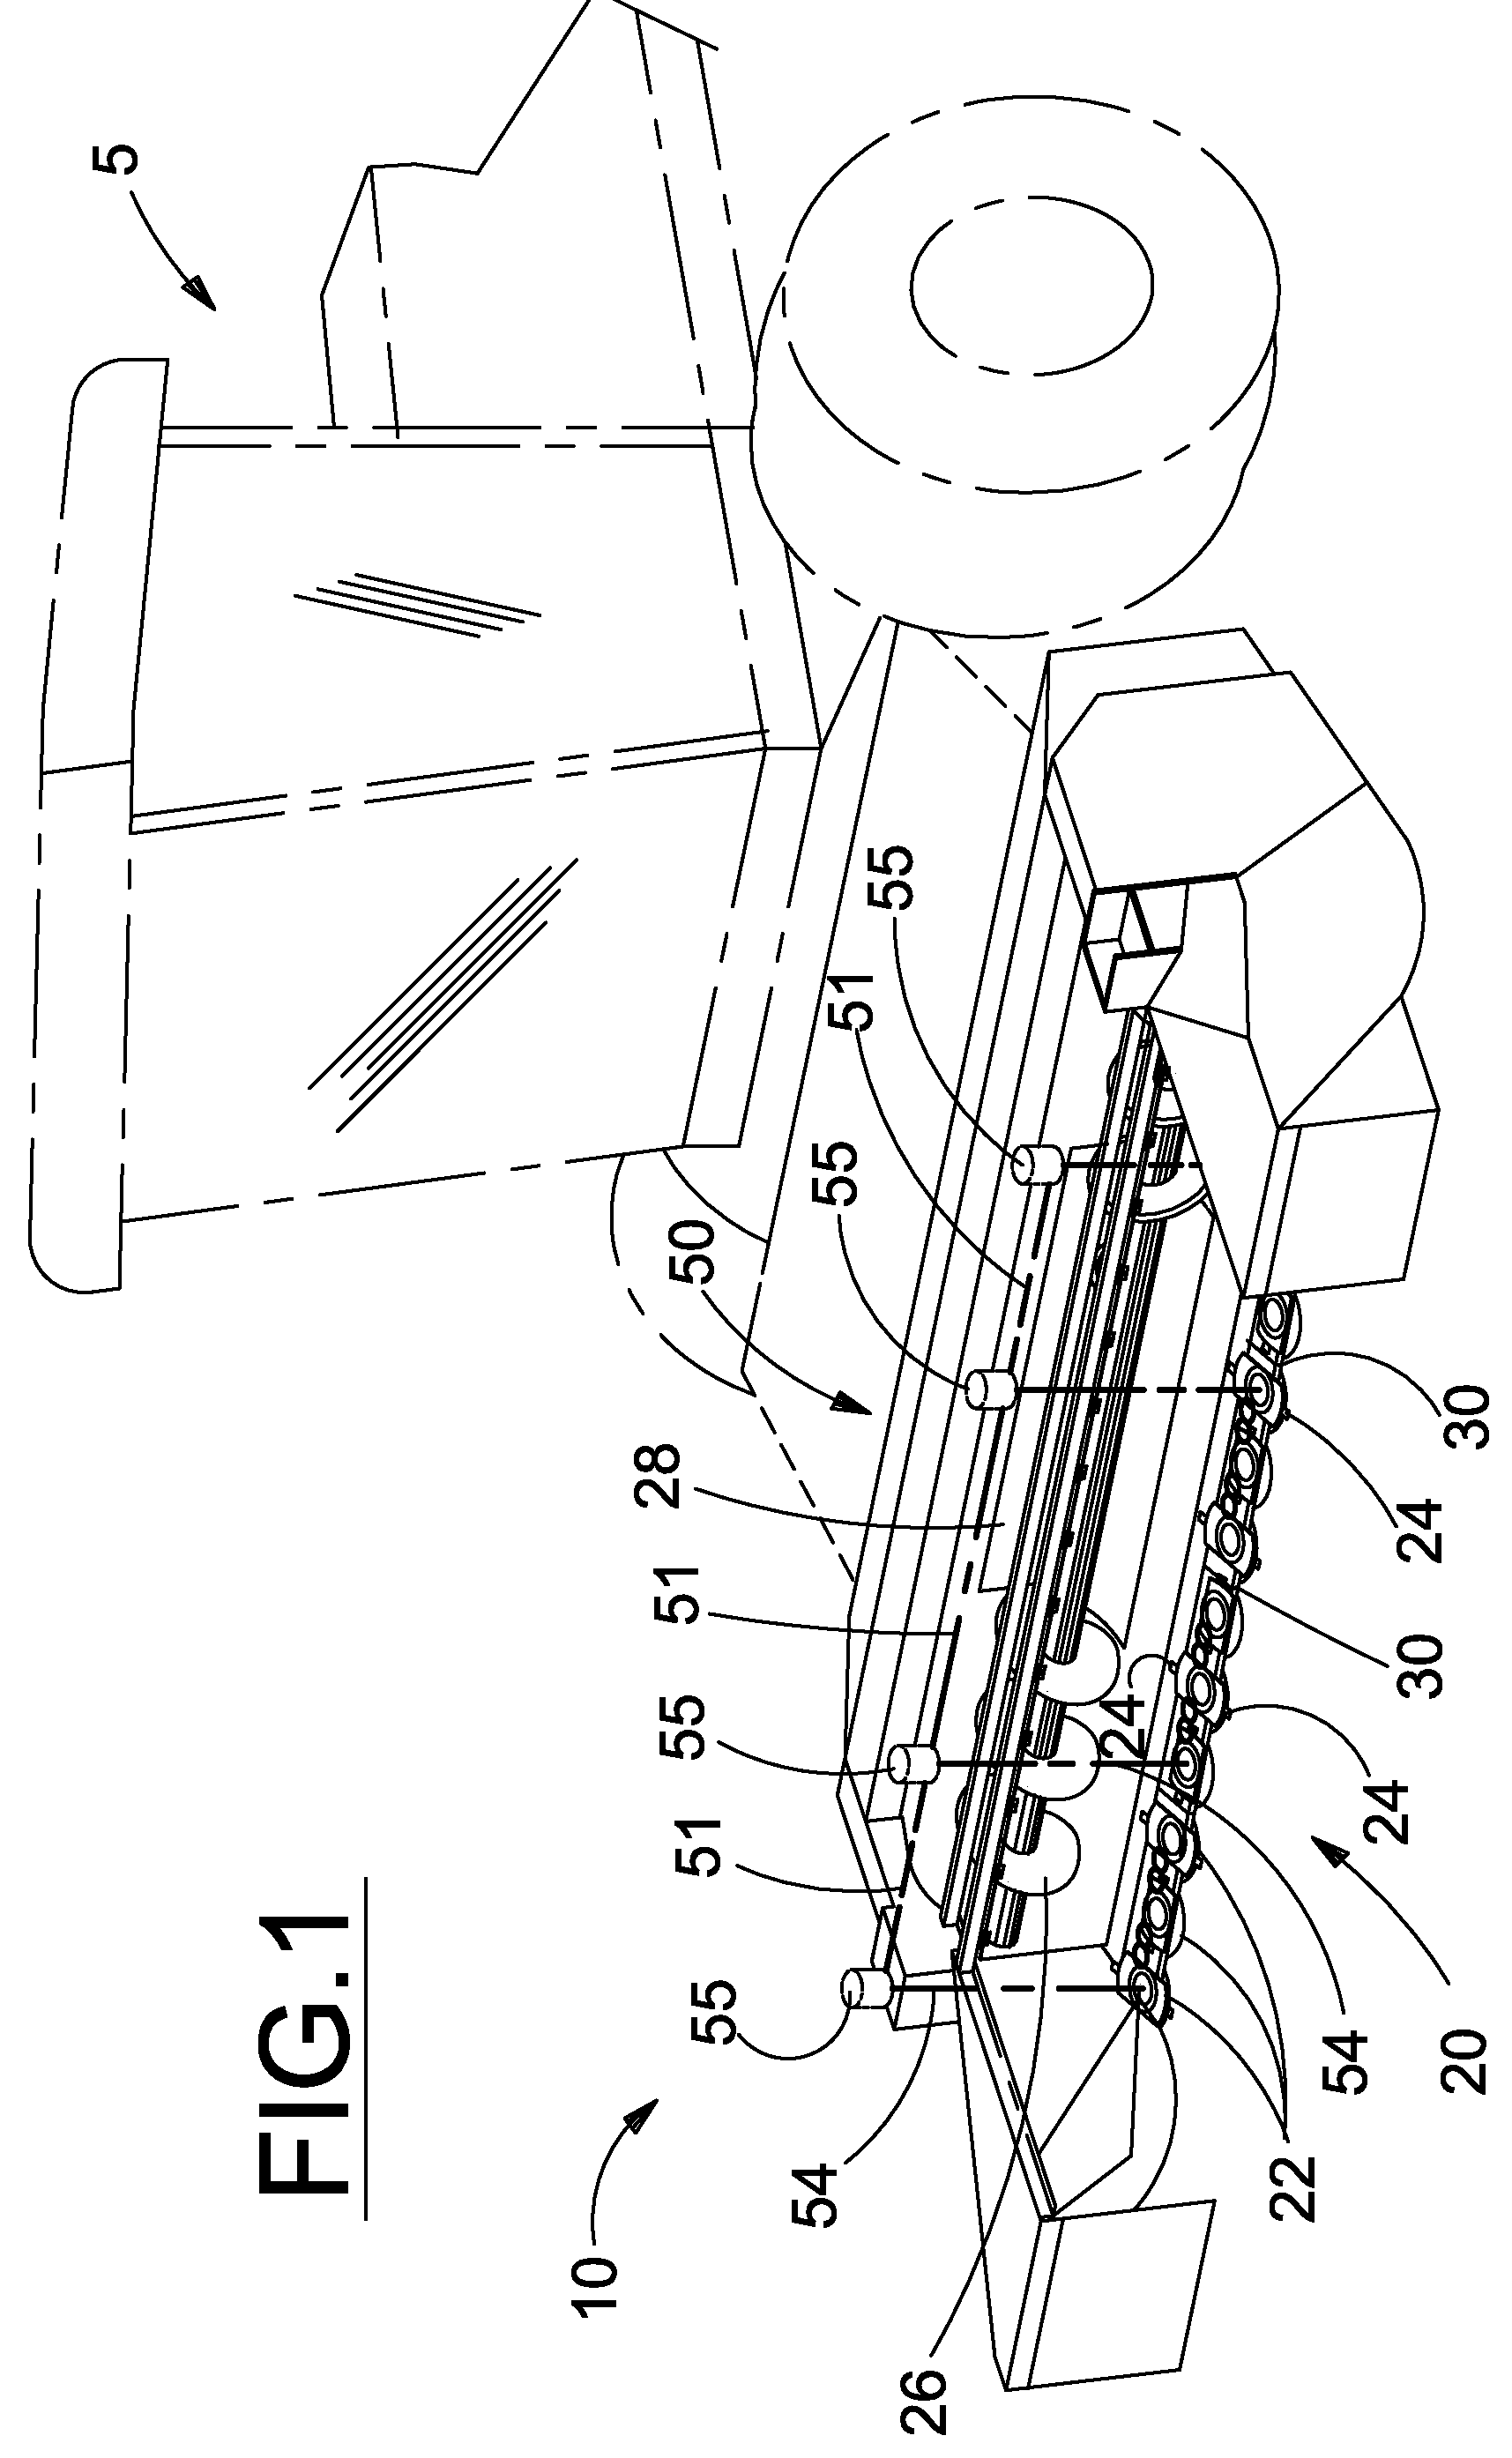 Three-disc module for a mower cutterbar